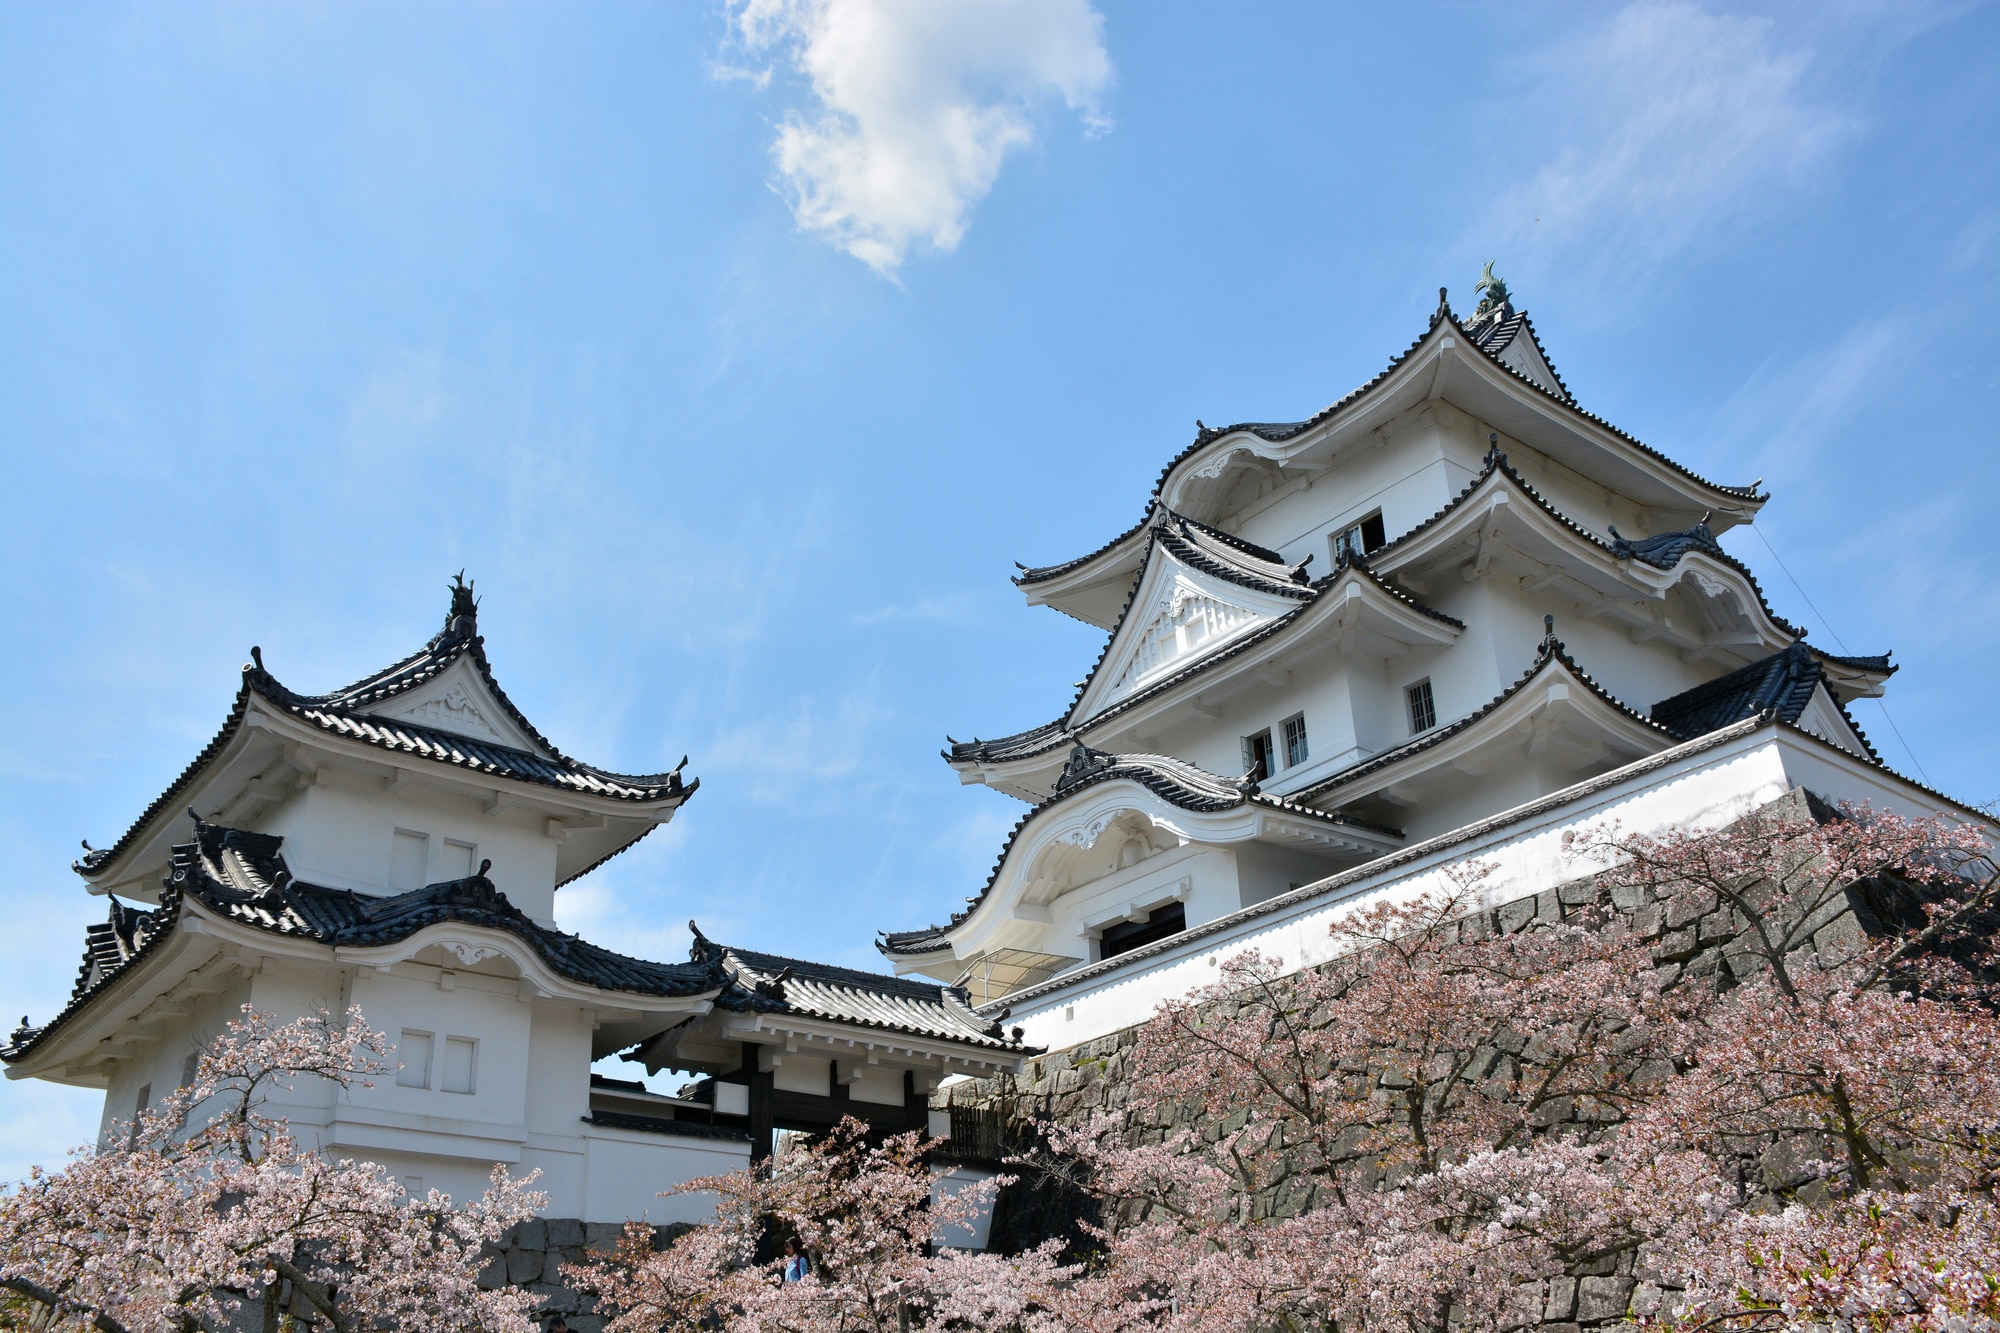 魅力的な場所 忍者のゆかりの地伊賀上野の観光スポット5選 Skyticket 観光ガイド